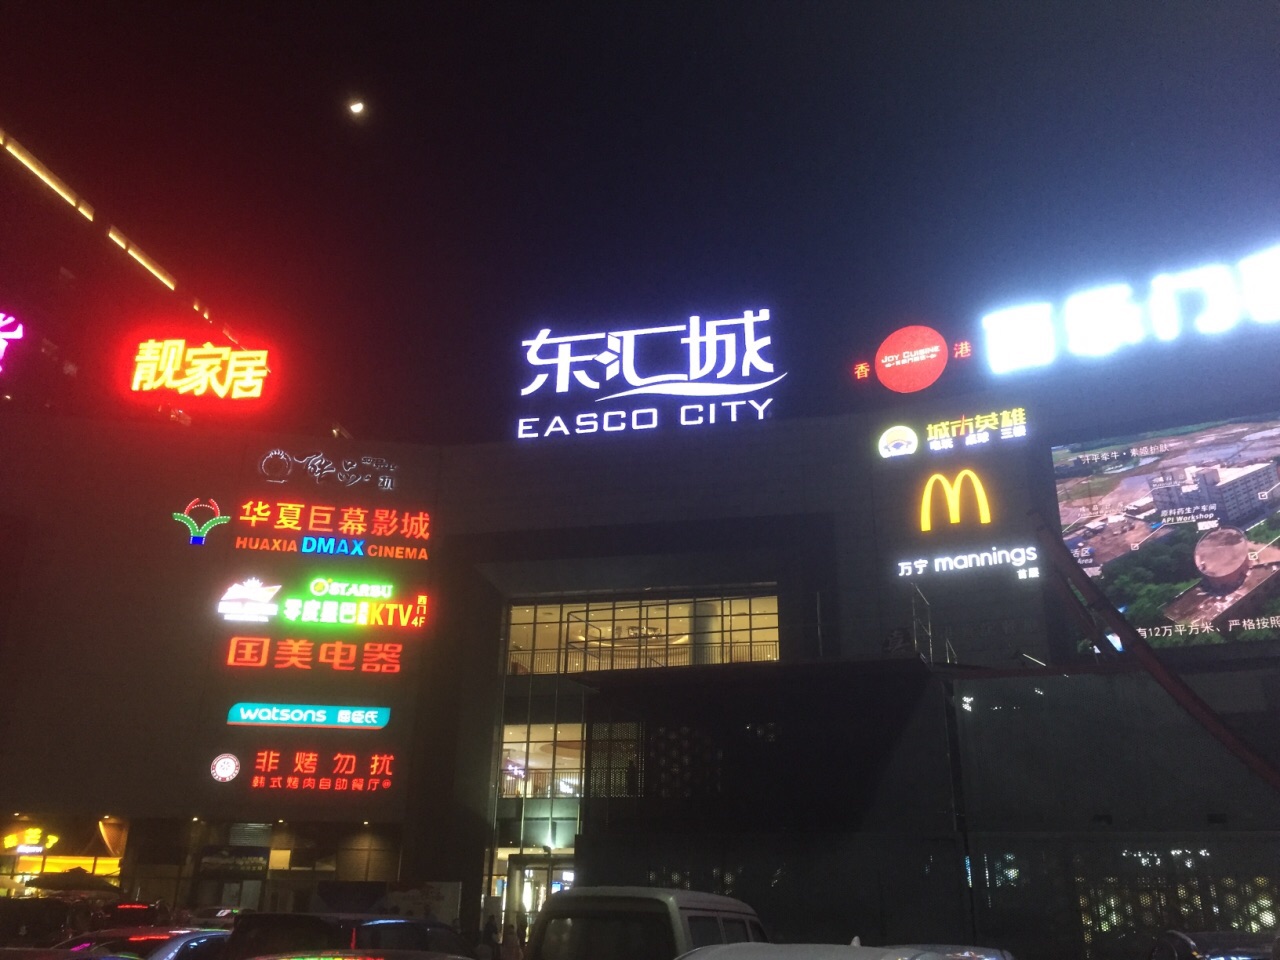 【携程攻略】开平东汇城购物,听出租司机说这是开平市最大的商场,在